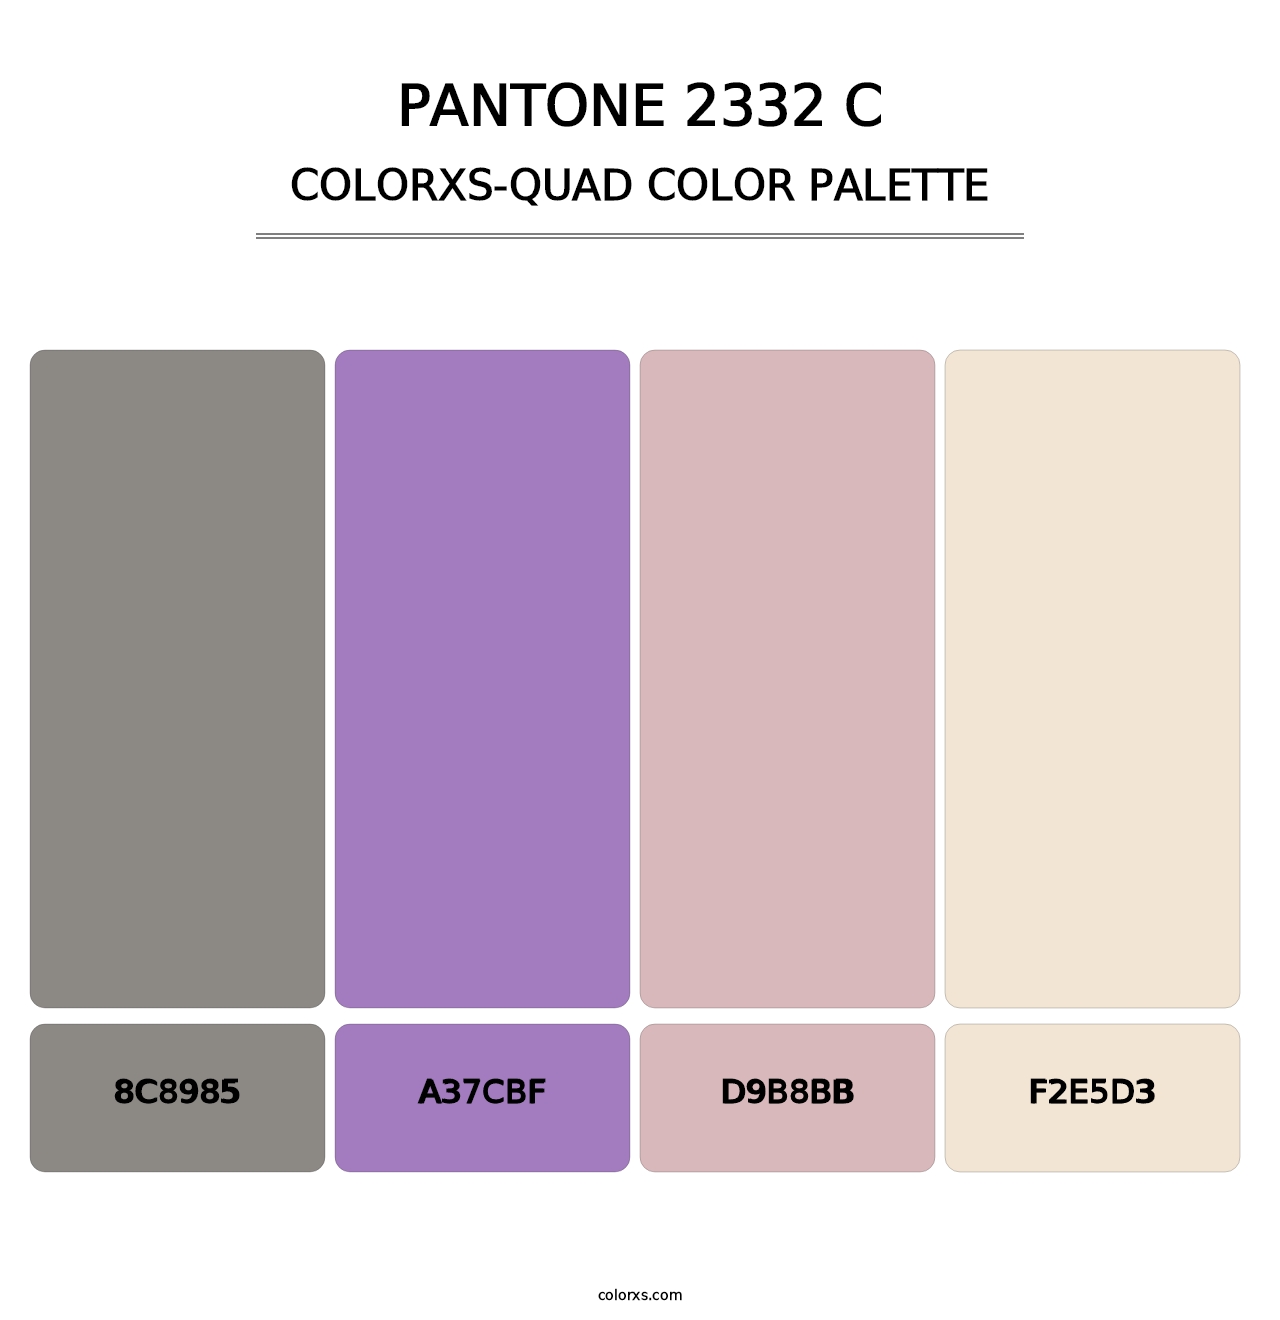 PANTONE 2332 C - Colorxs Quad Palette